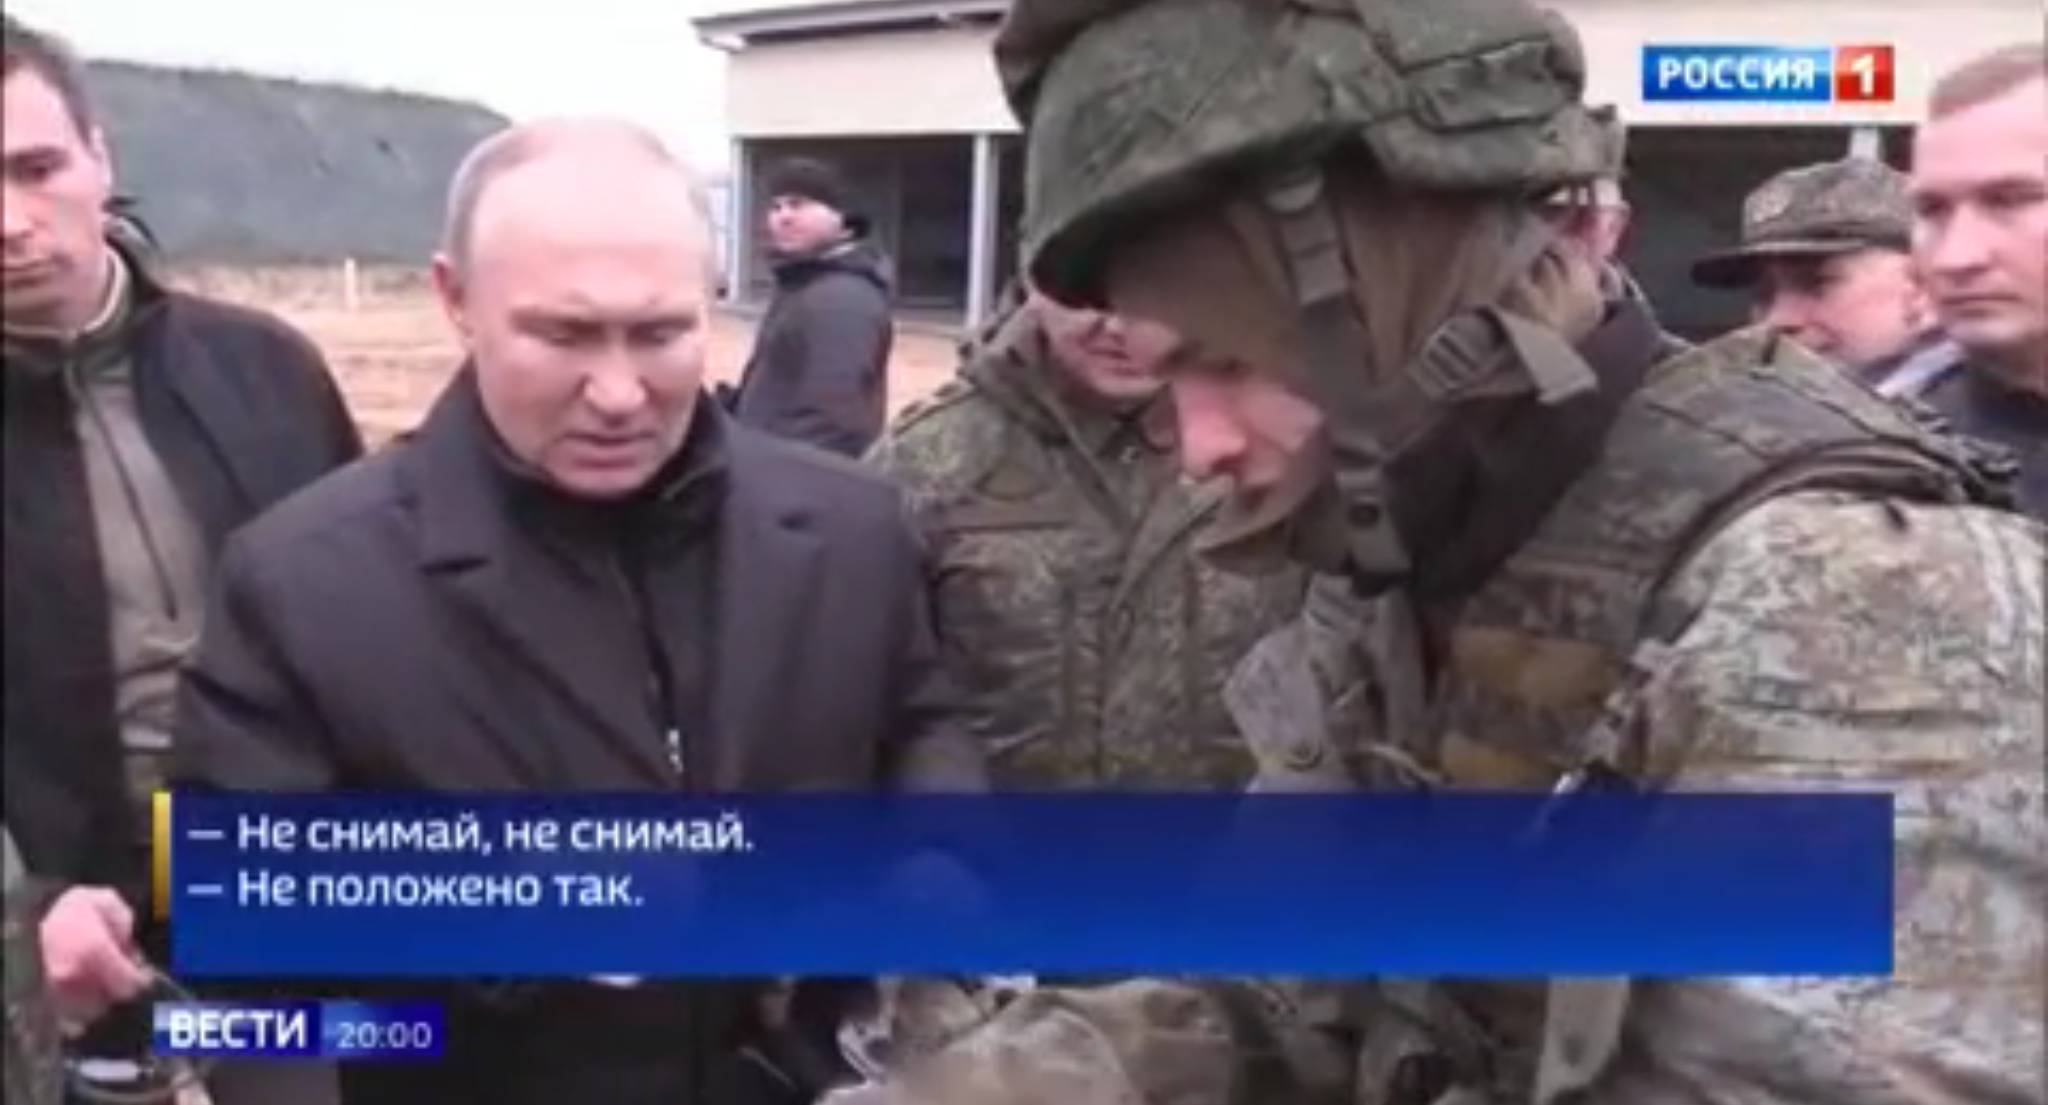 Żolnierz ściaga rękawicę, by uścisnąć Putinowi dłoń